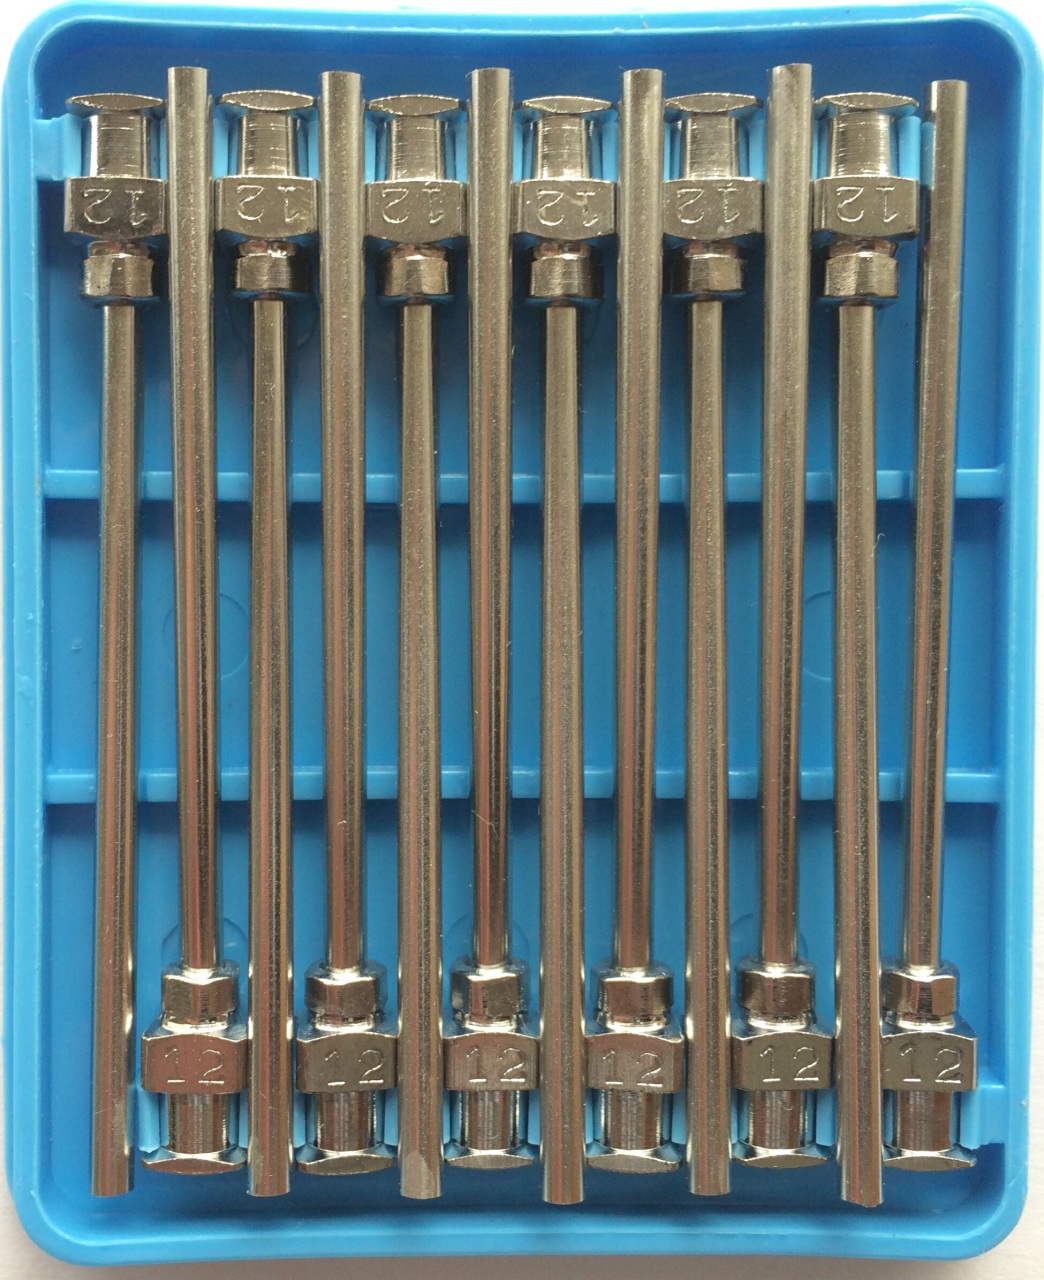 Details about   Asymtek 42-1420 Dispensing Needles 20 Gauge 12ct 